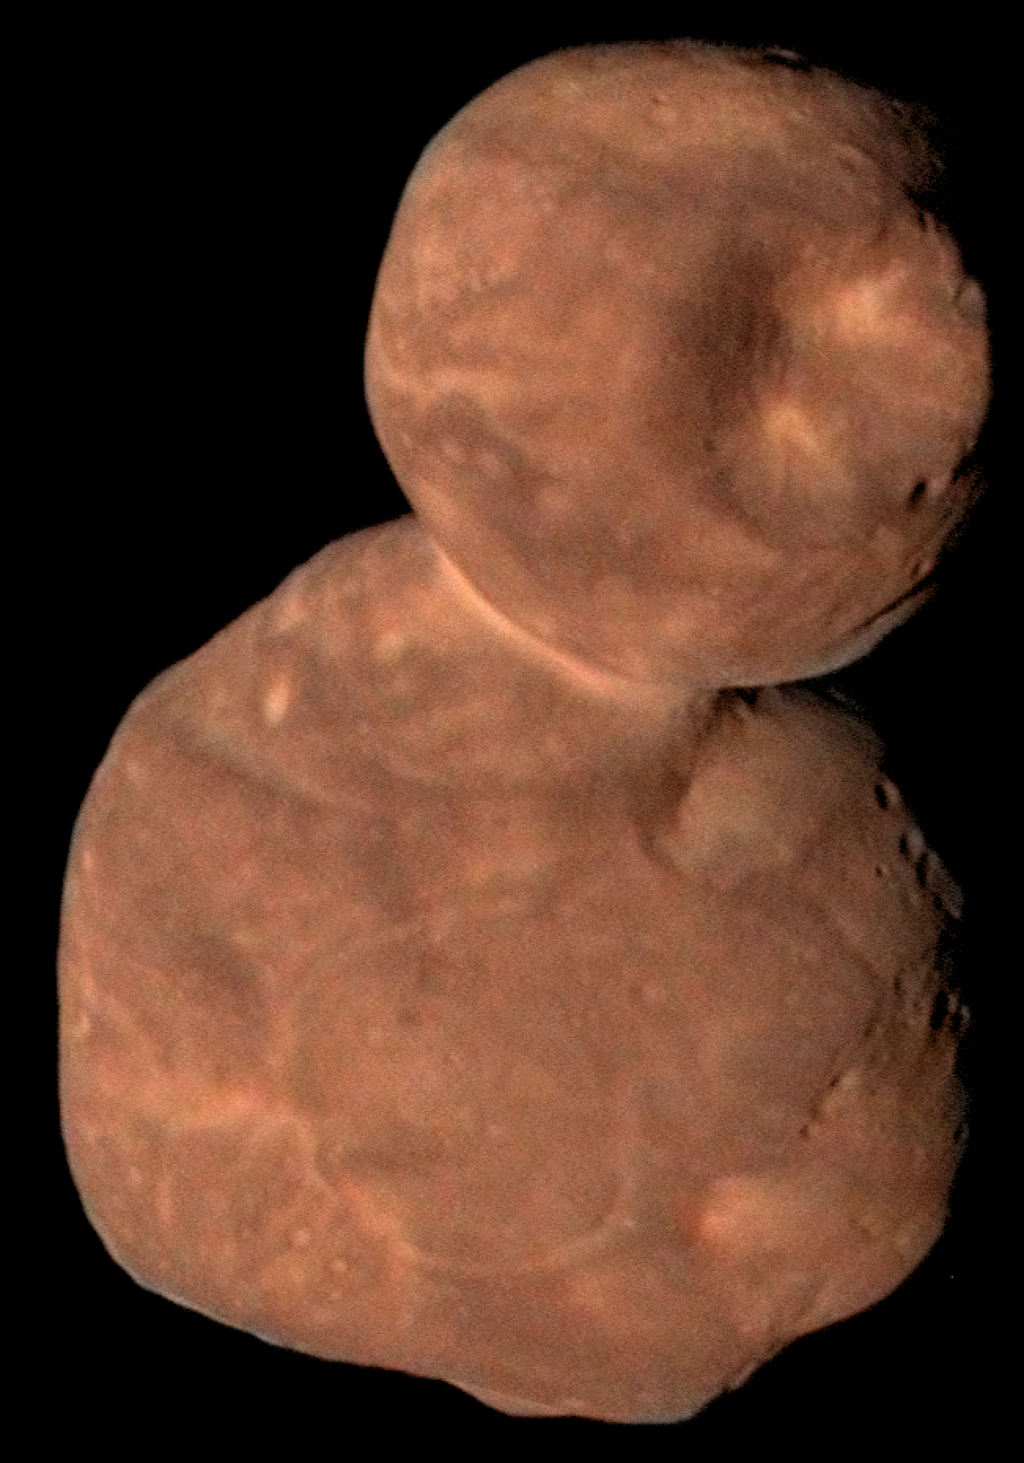 O formato de boneco de neve achatado do Arrokoth e sua superfície lisa ainda desafia os cientistas (Imagem: NASA)